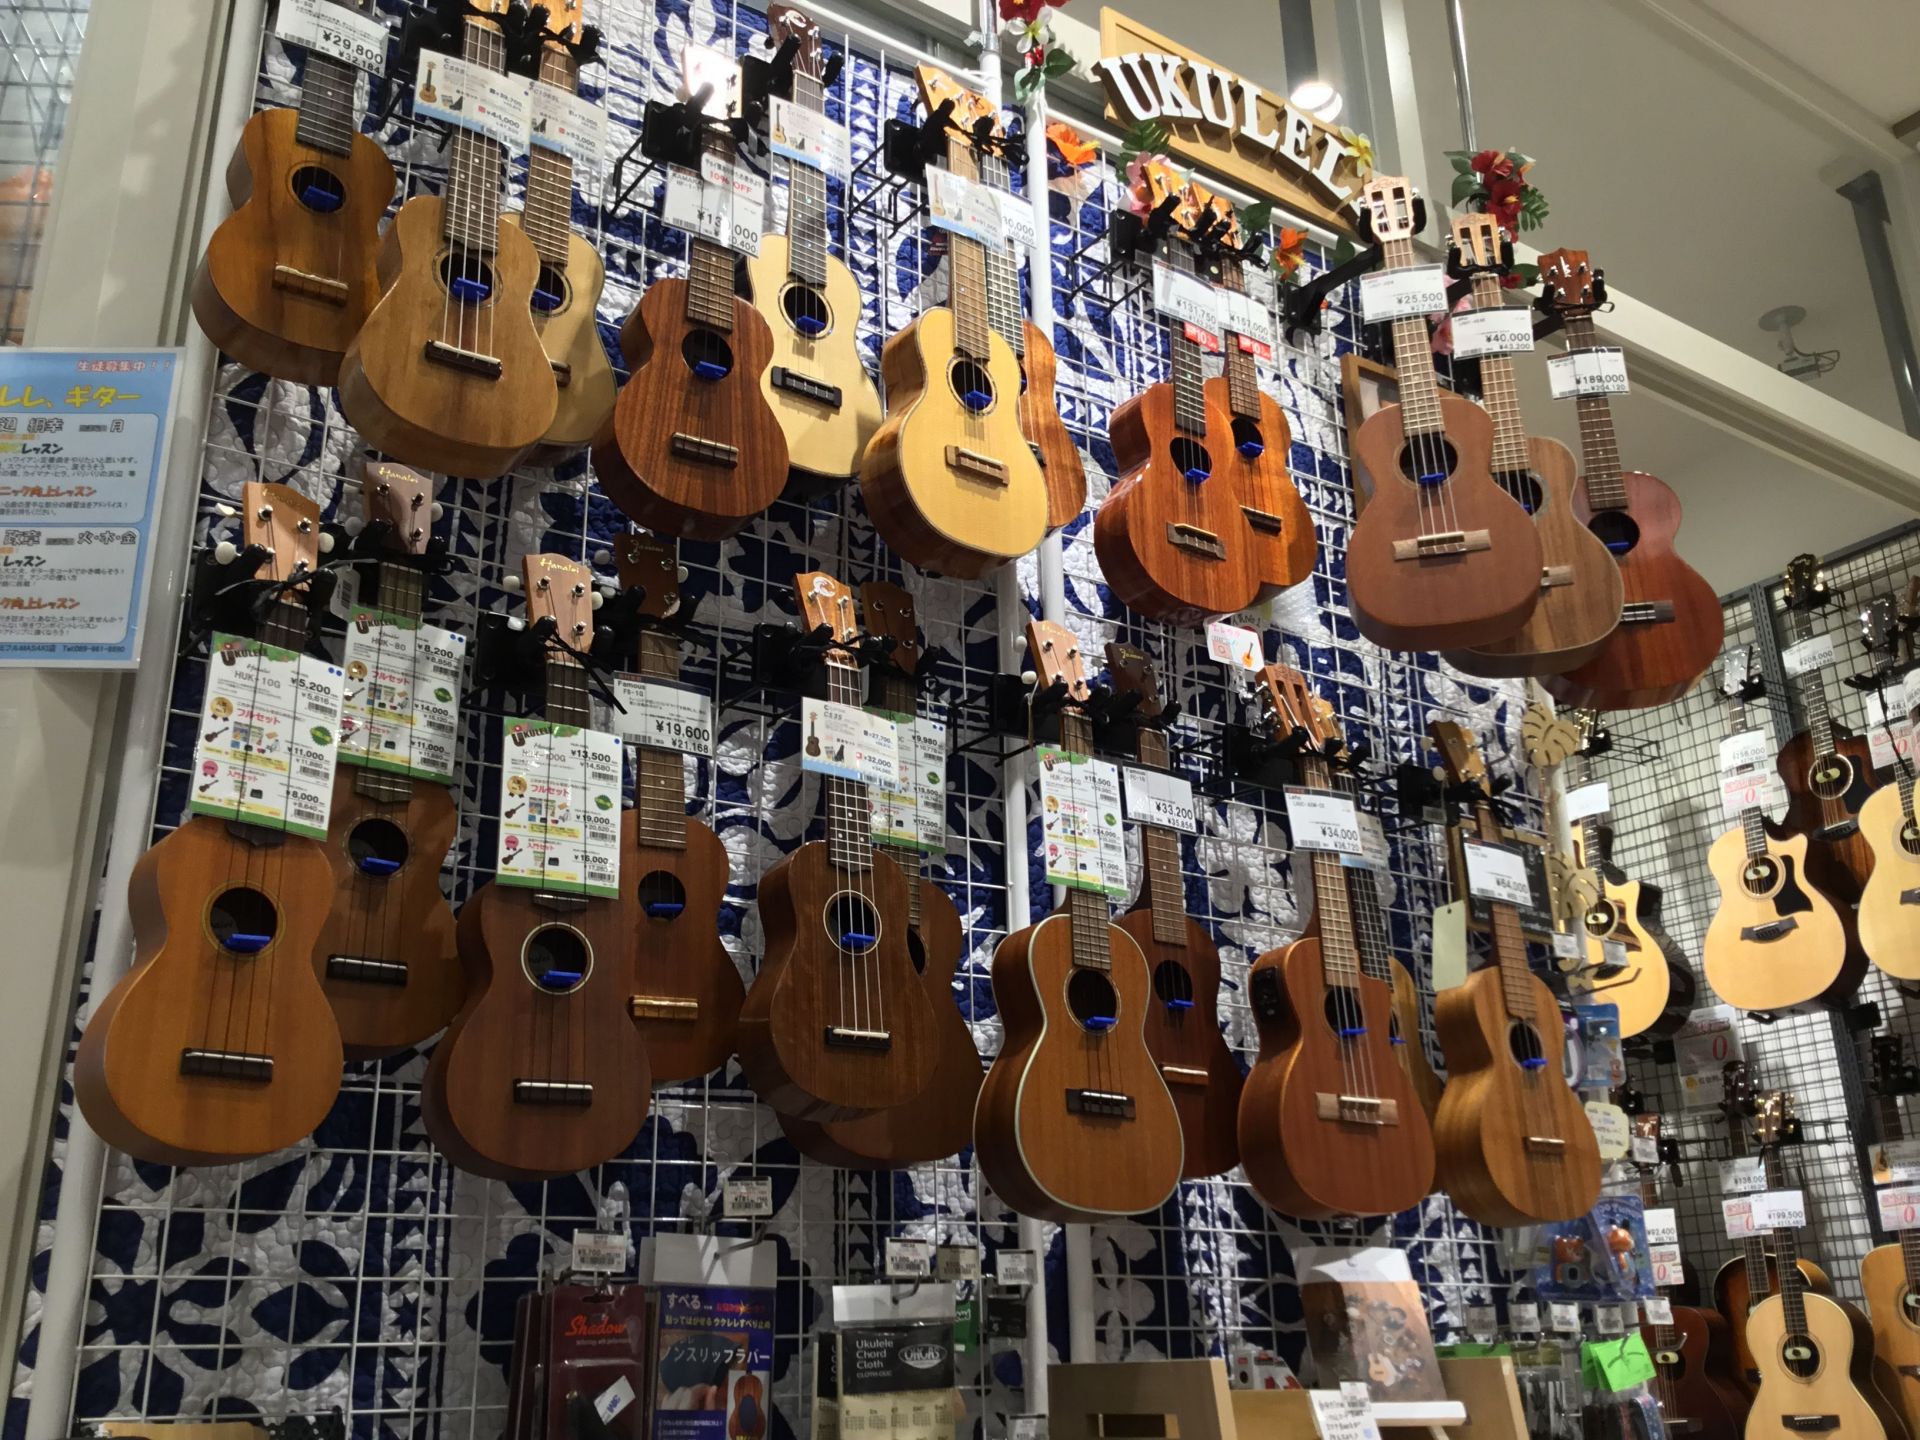 *ウクレレラインナップ♪島村楽器エミフルMASAKI店 愛媛県、松山市周辺にお住まいの皆様こんにちは！島村楽器エミフルMASAKI店ウクレレ担当の大西です(＾＾)♪]] 何か楽器をやってみたいけどどれも難しそうだな、と思っている方におすすめしたいのが、小さくて可愛い楽器ウクレレです。]]ポロロンと軽 […]